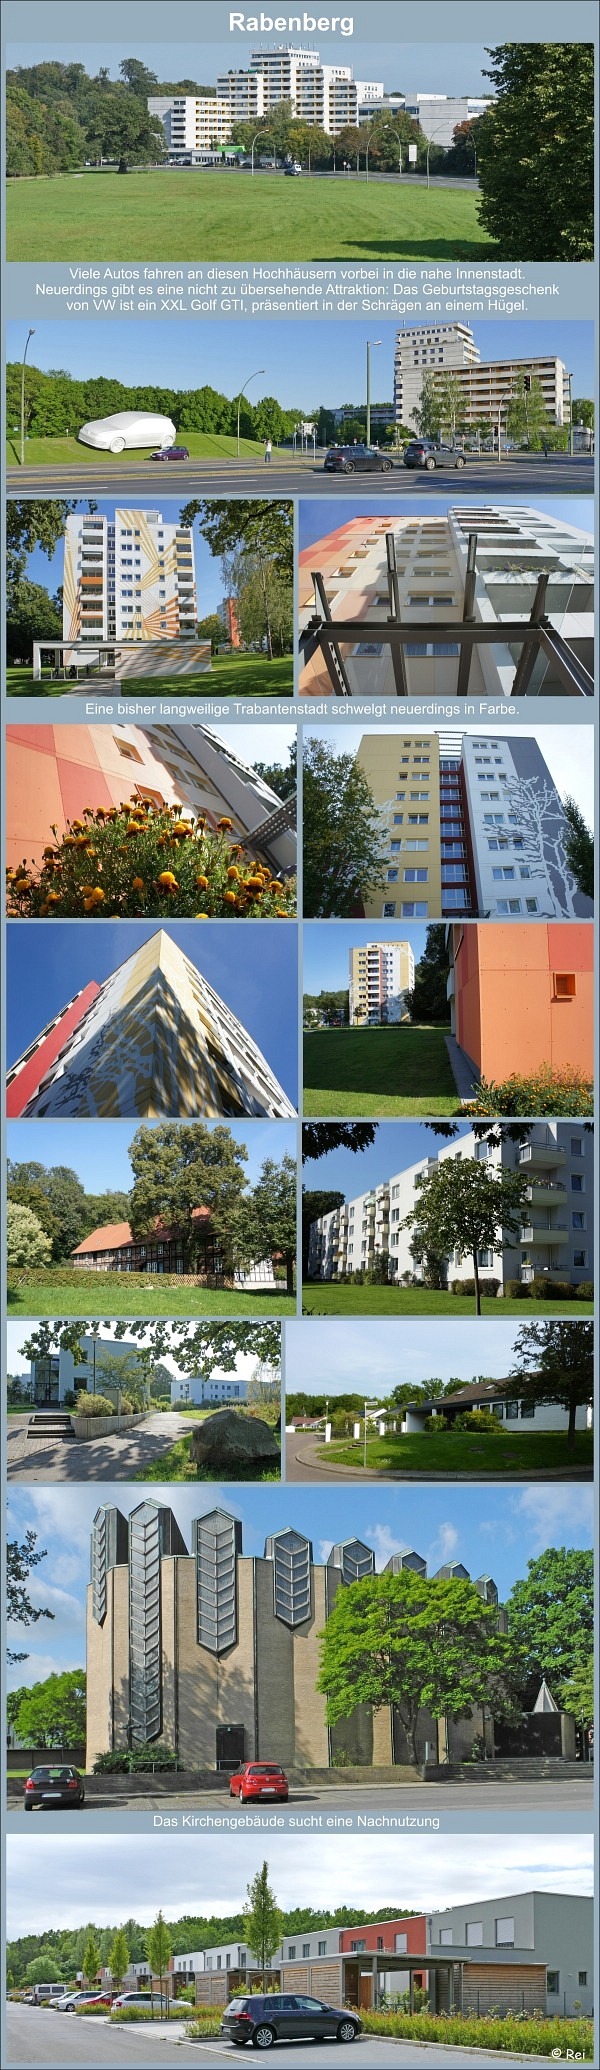 Rabenberg in Wolfsburg